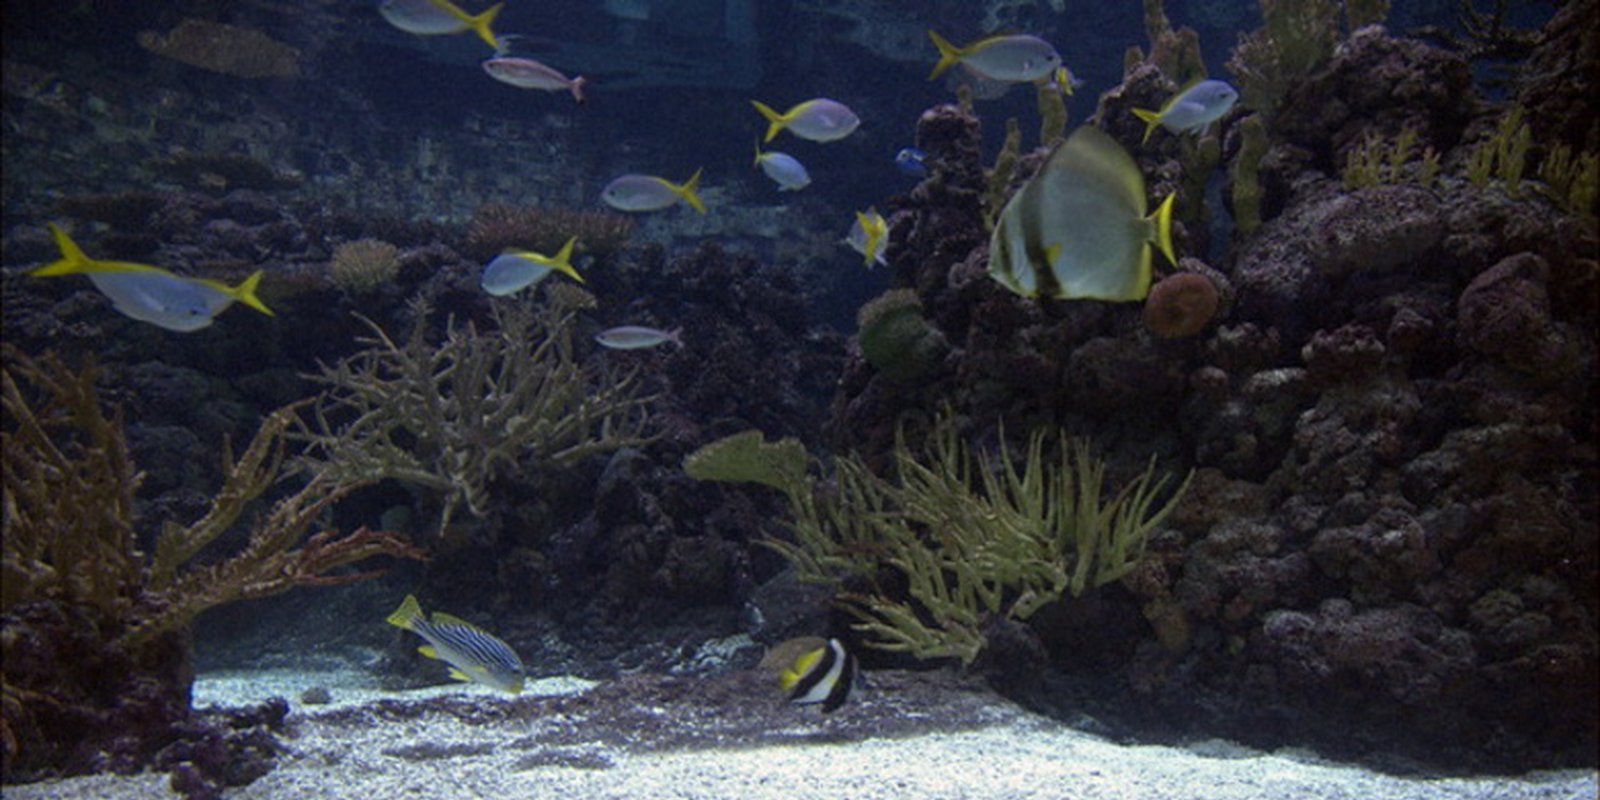 DVD Aquarium